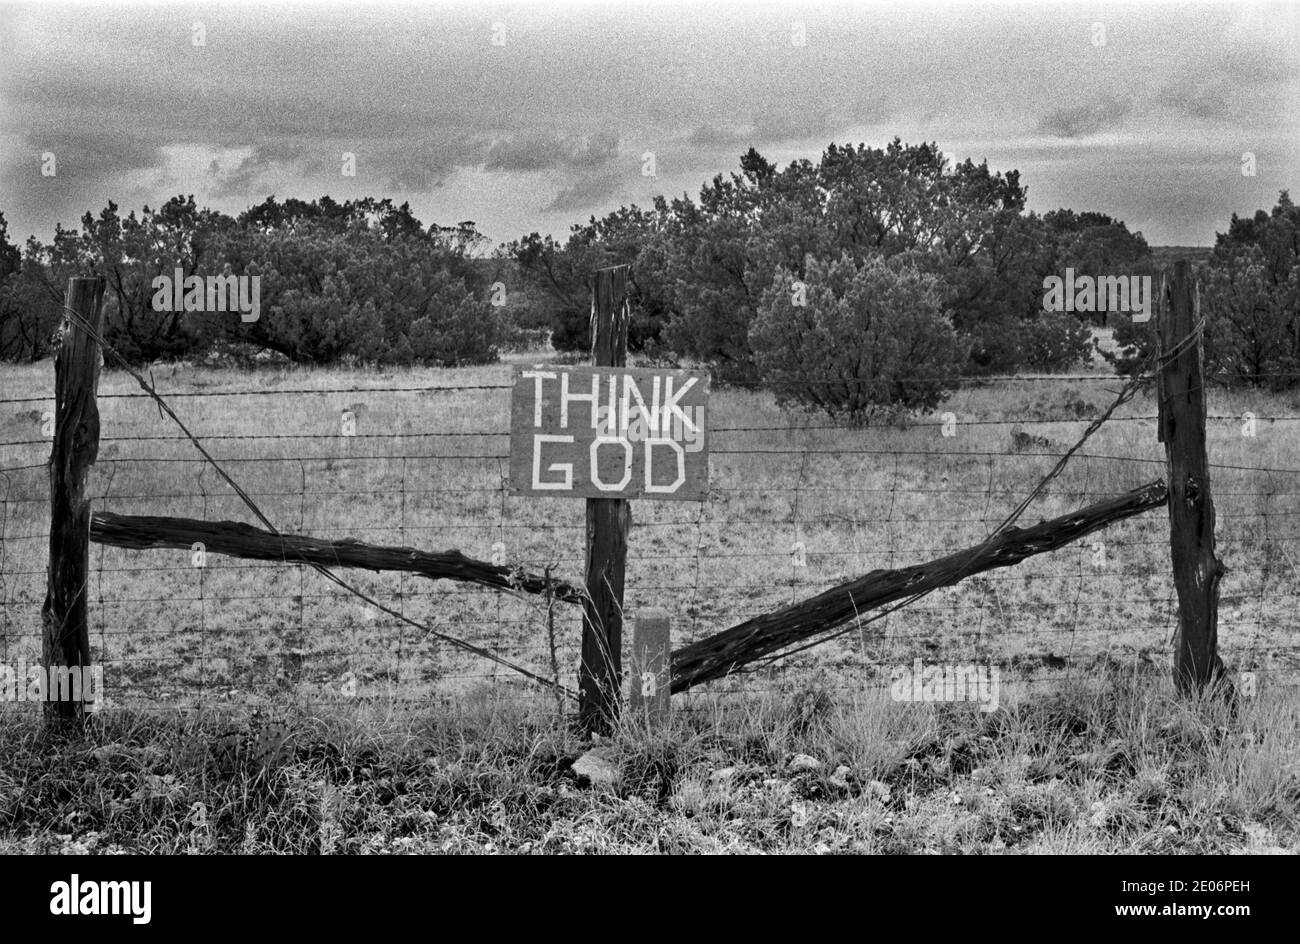 Piensa en Dios, nacido de nuevo signo de movimiento cristiano fijado a una valla que encierra tierra estéril. Big Spring, Condado de Howard, Texas EE.UU. 1999 90 HOMER SYKES Foto de stock